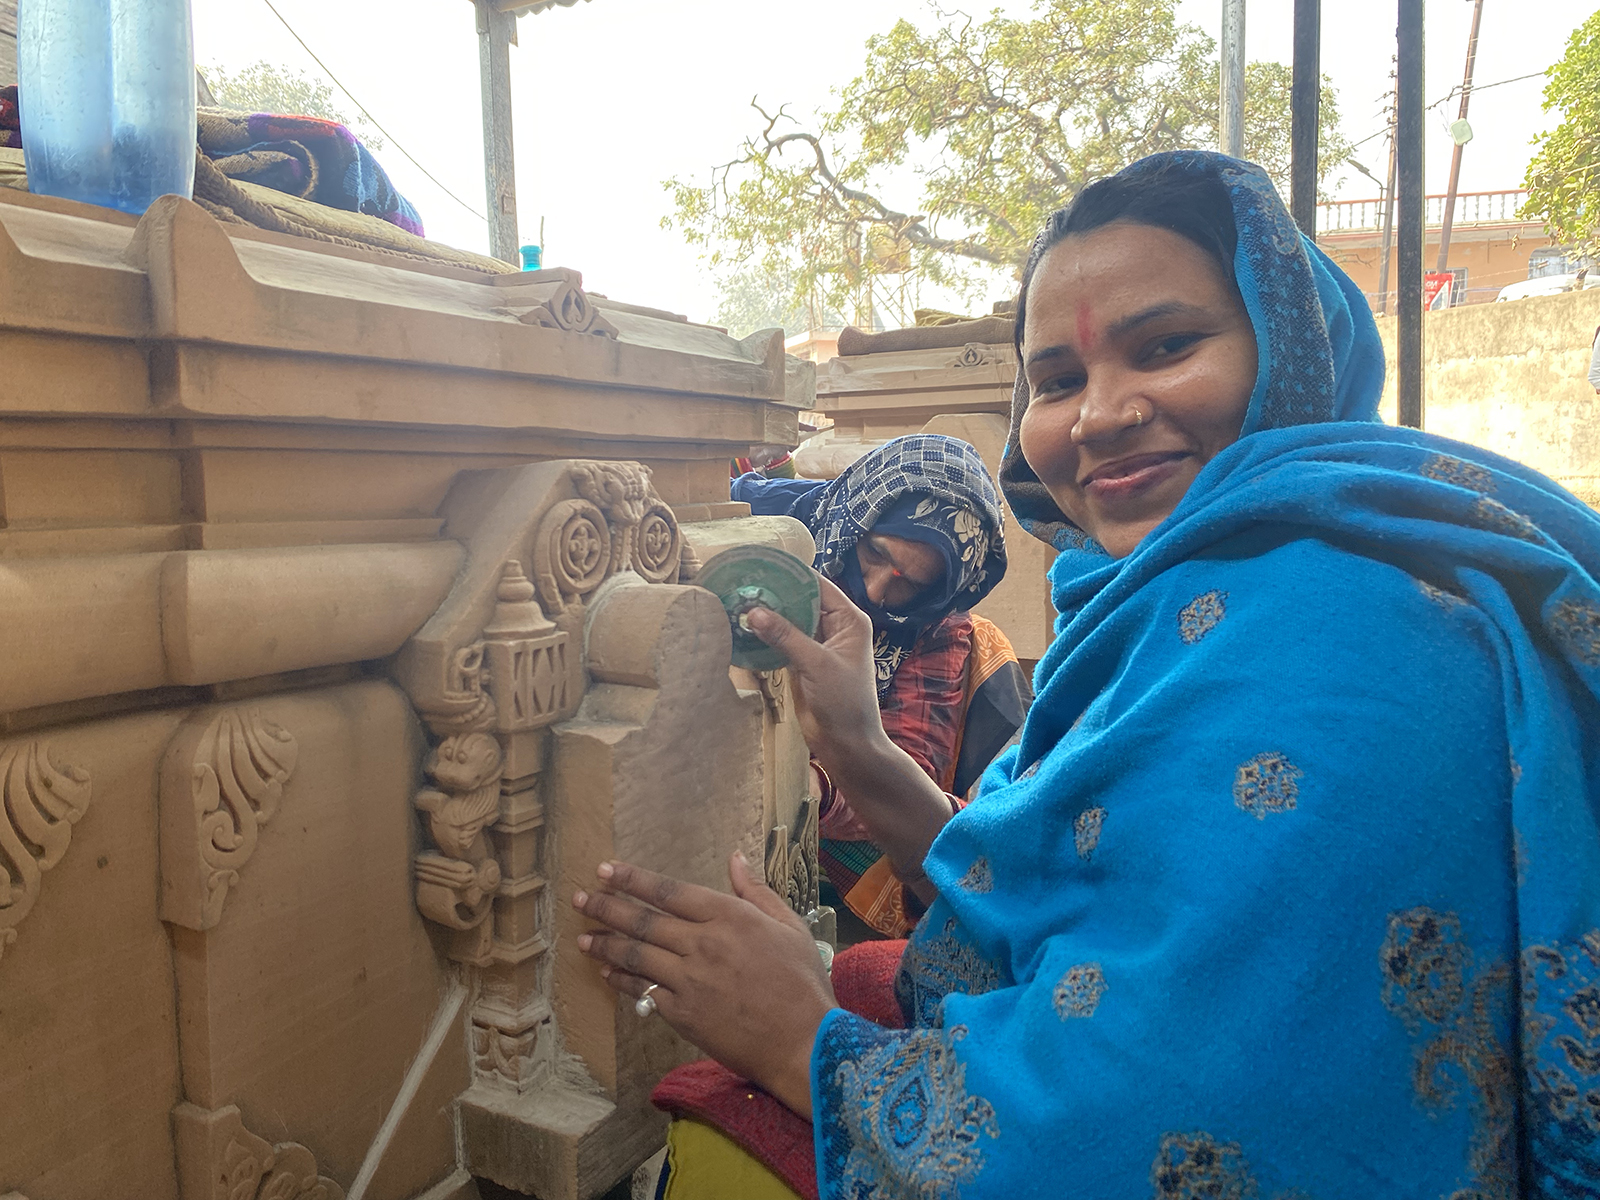 Sapna Sahu pauses from polishing stones at a karyashala in Ayodhya, India. (RNS photo/Yashraj Sharma)